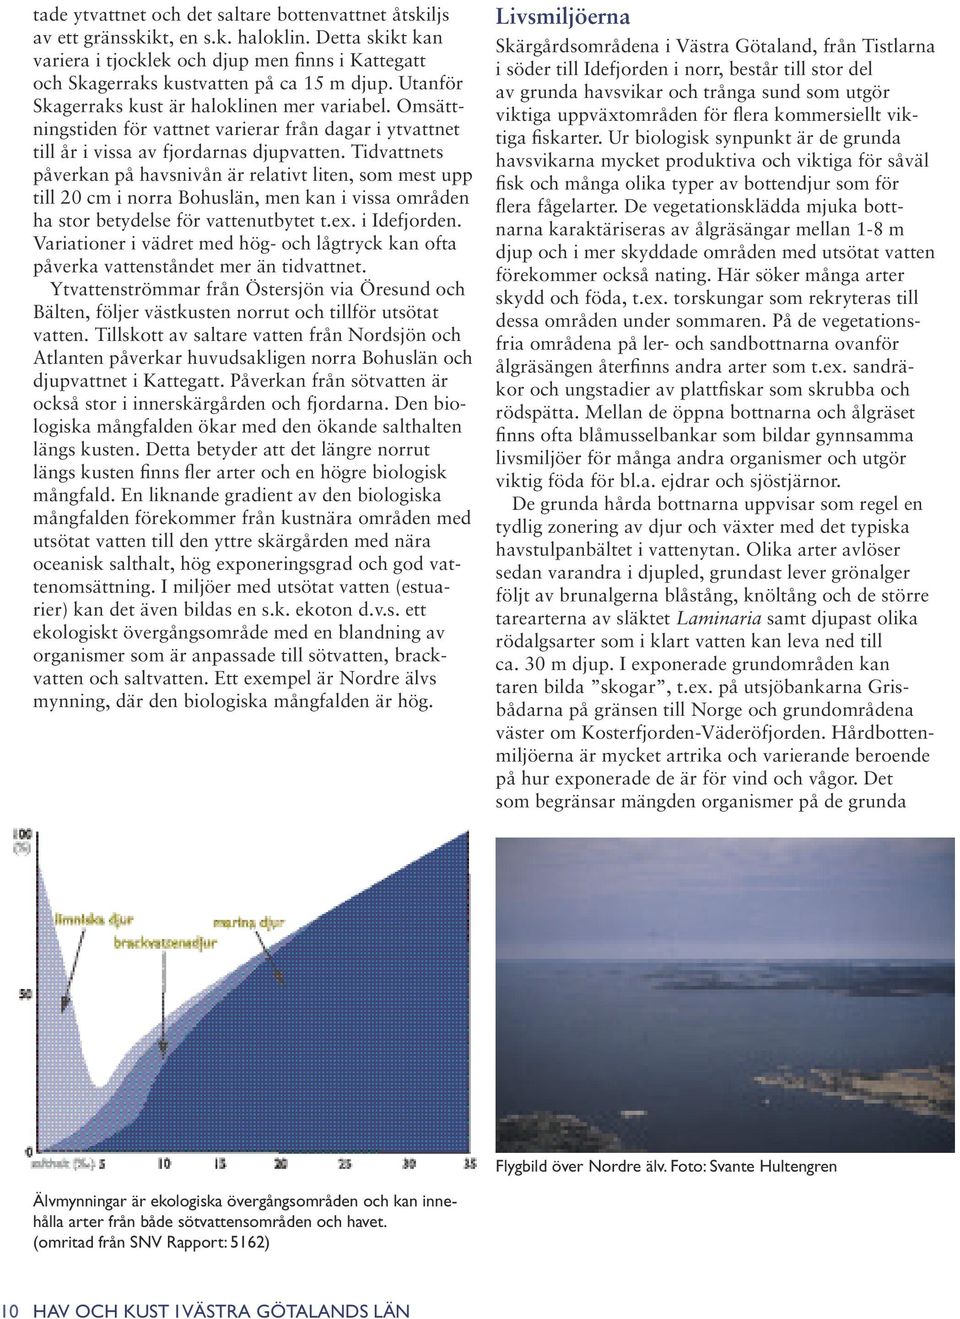 Tidvattnets påverkan på havsnivån är relativt liten, som mest upp till 20 cm i norra Bohuslän, men kan i vissa områden ha stor betydelse för vattenutbytet t.ex. i Idefjorden.